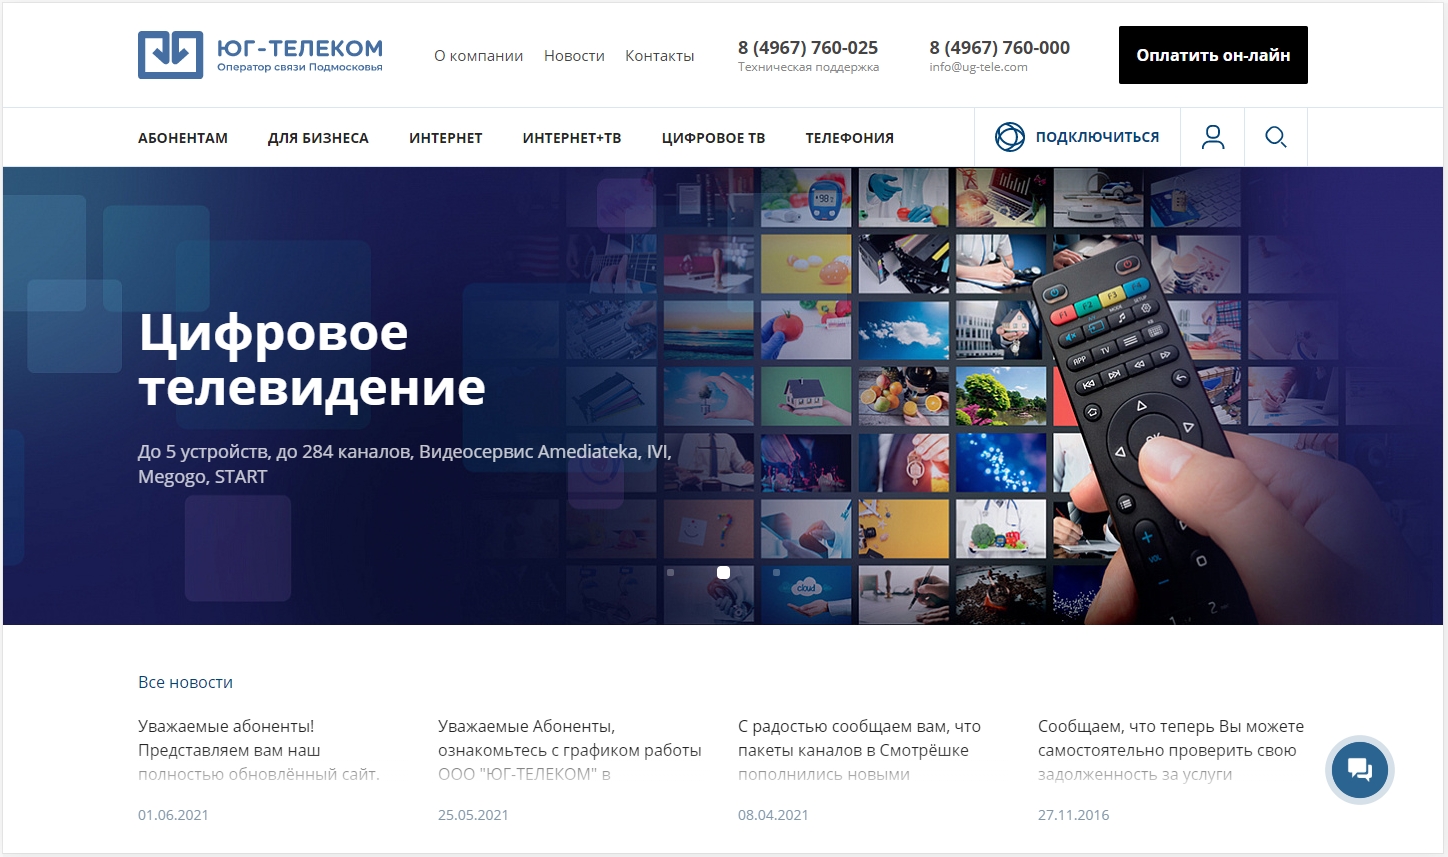 Новый сайт компании ЮГ-ТЕЛЕКОМ